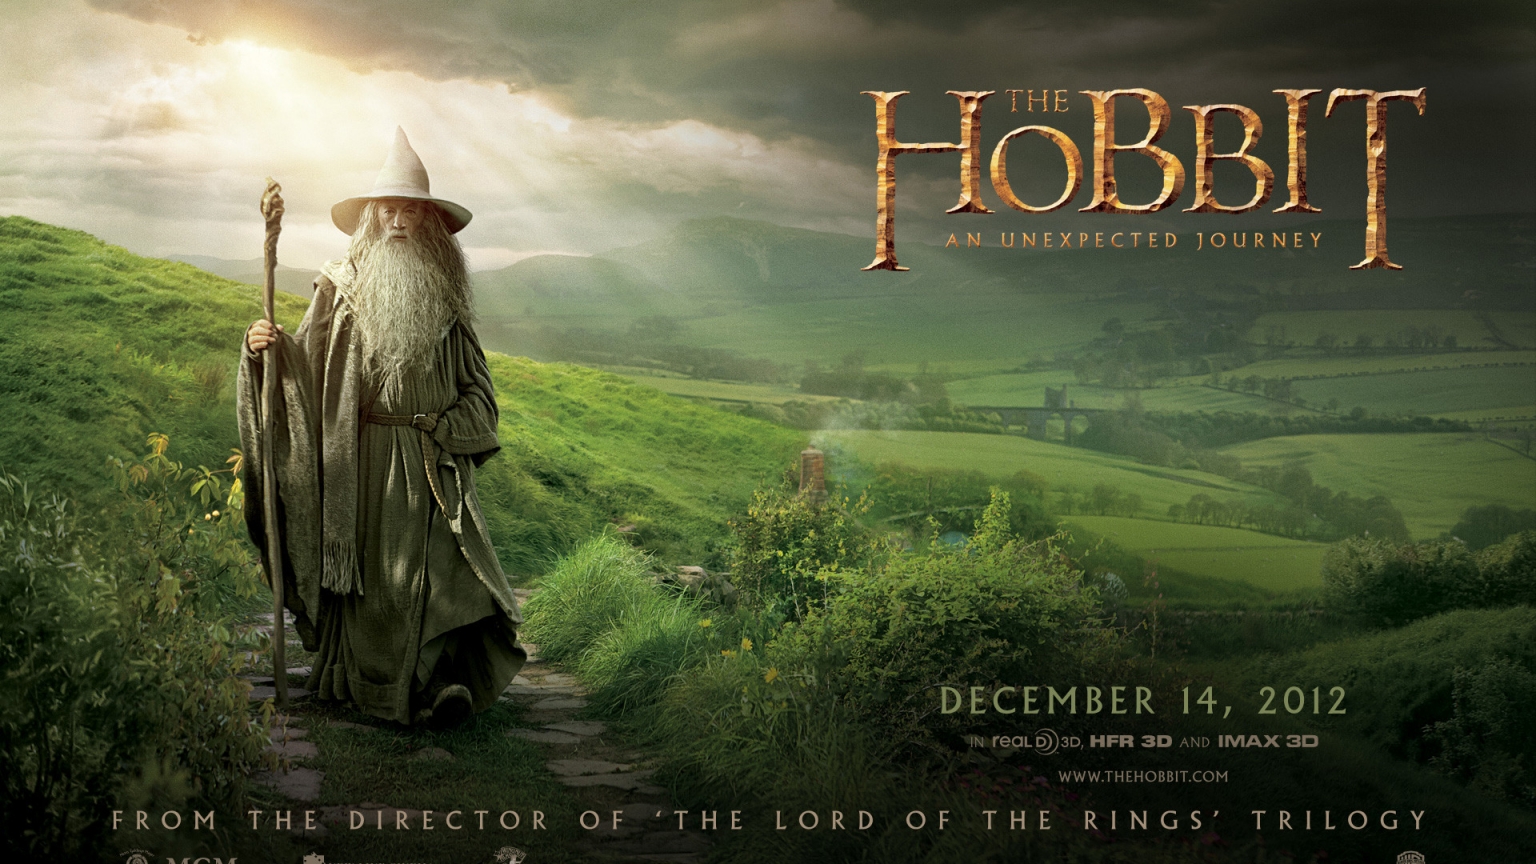 The Hobbit Gandalf for 1536 x 864 HDTV resolution